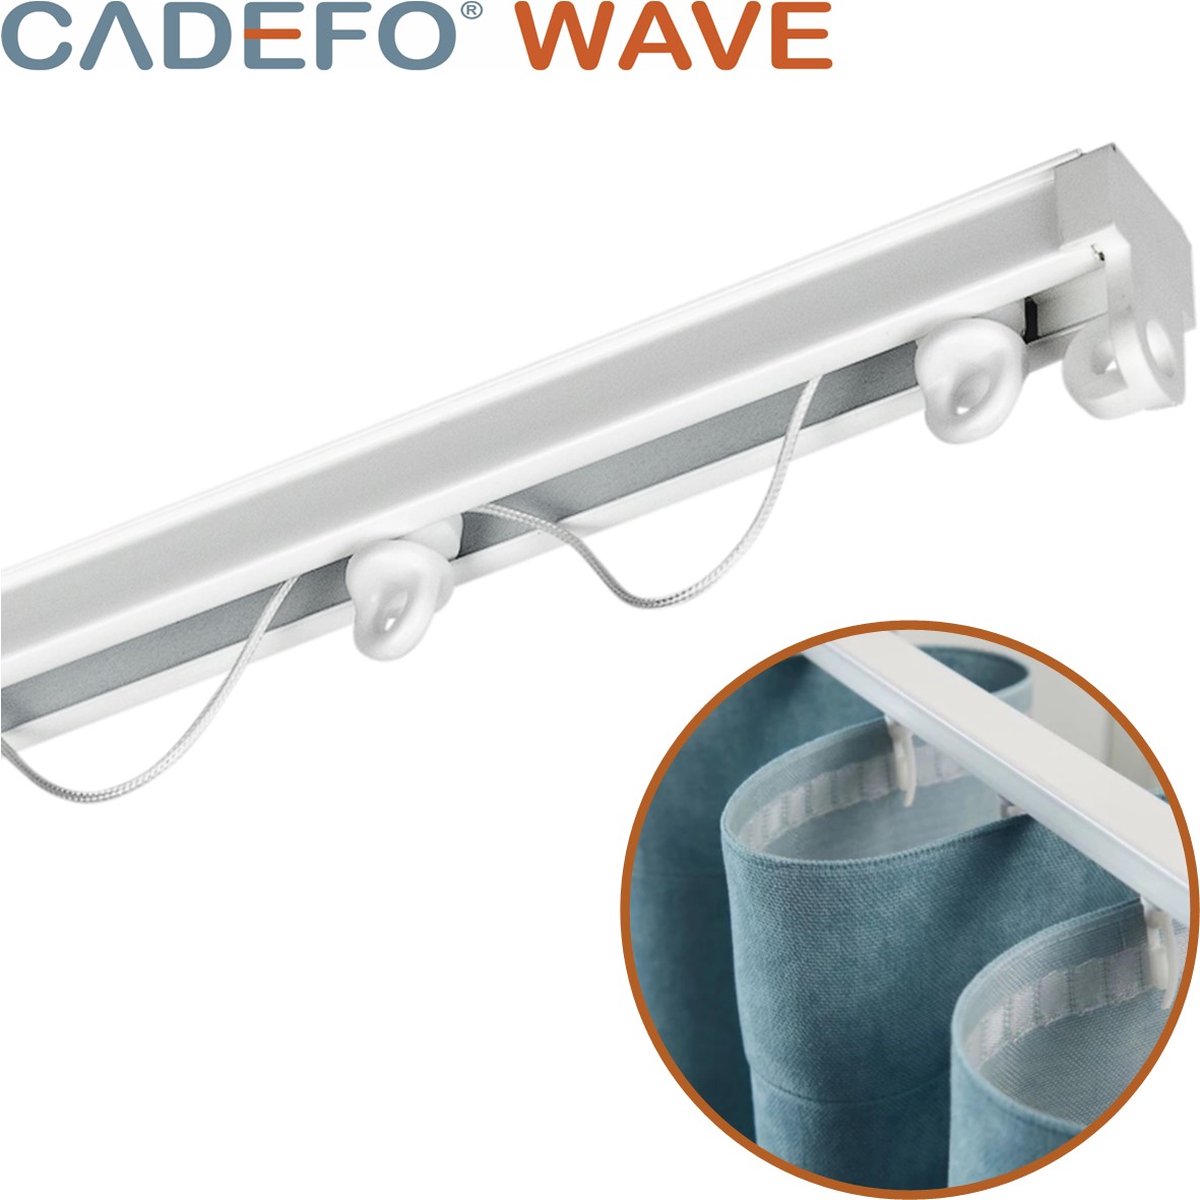 CADEFO WAVE (251 - 300 cm) Gordijnrails - Compleet op maat! - UIT 1 STUK - Leverbaar tot 6 meter - Plafondbevestiging - Lengte 282 cm